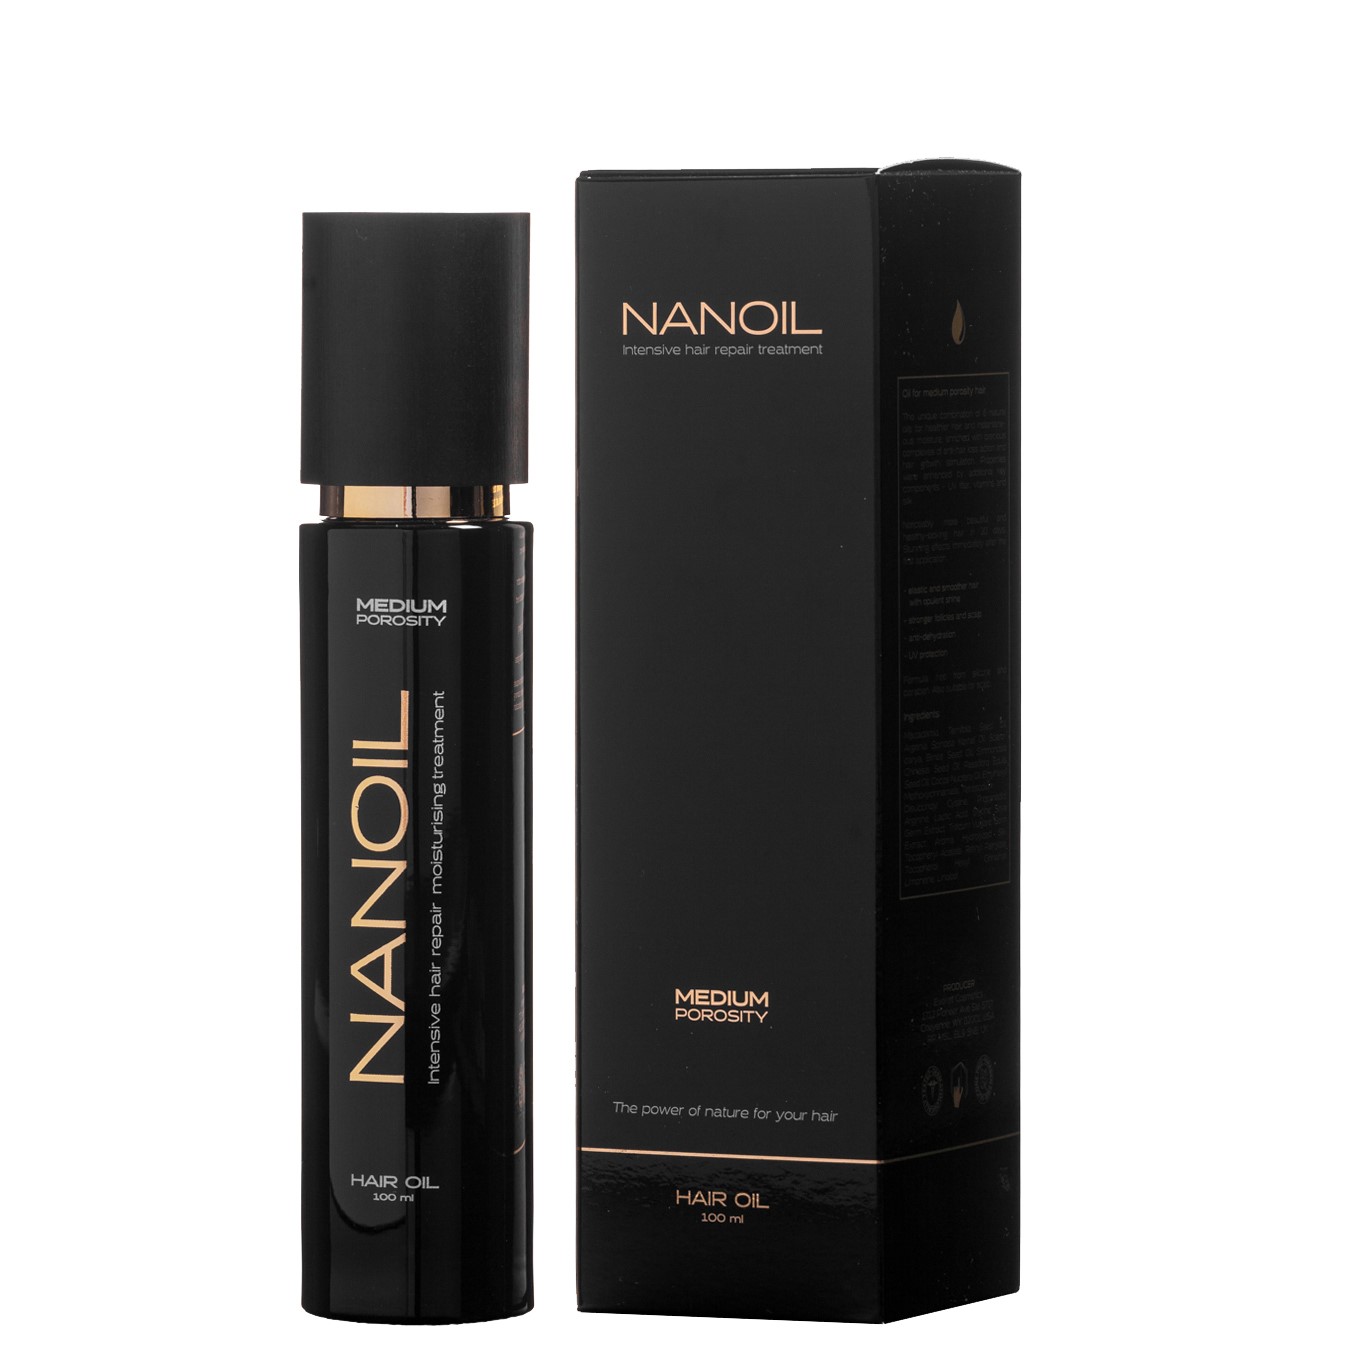 Nanoil Intensive Hair Repair Treatment Hair Oil